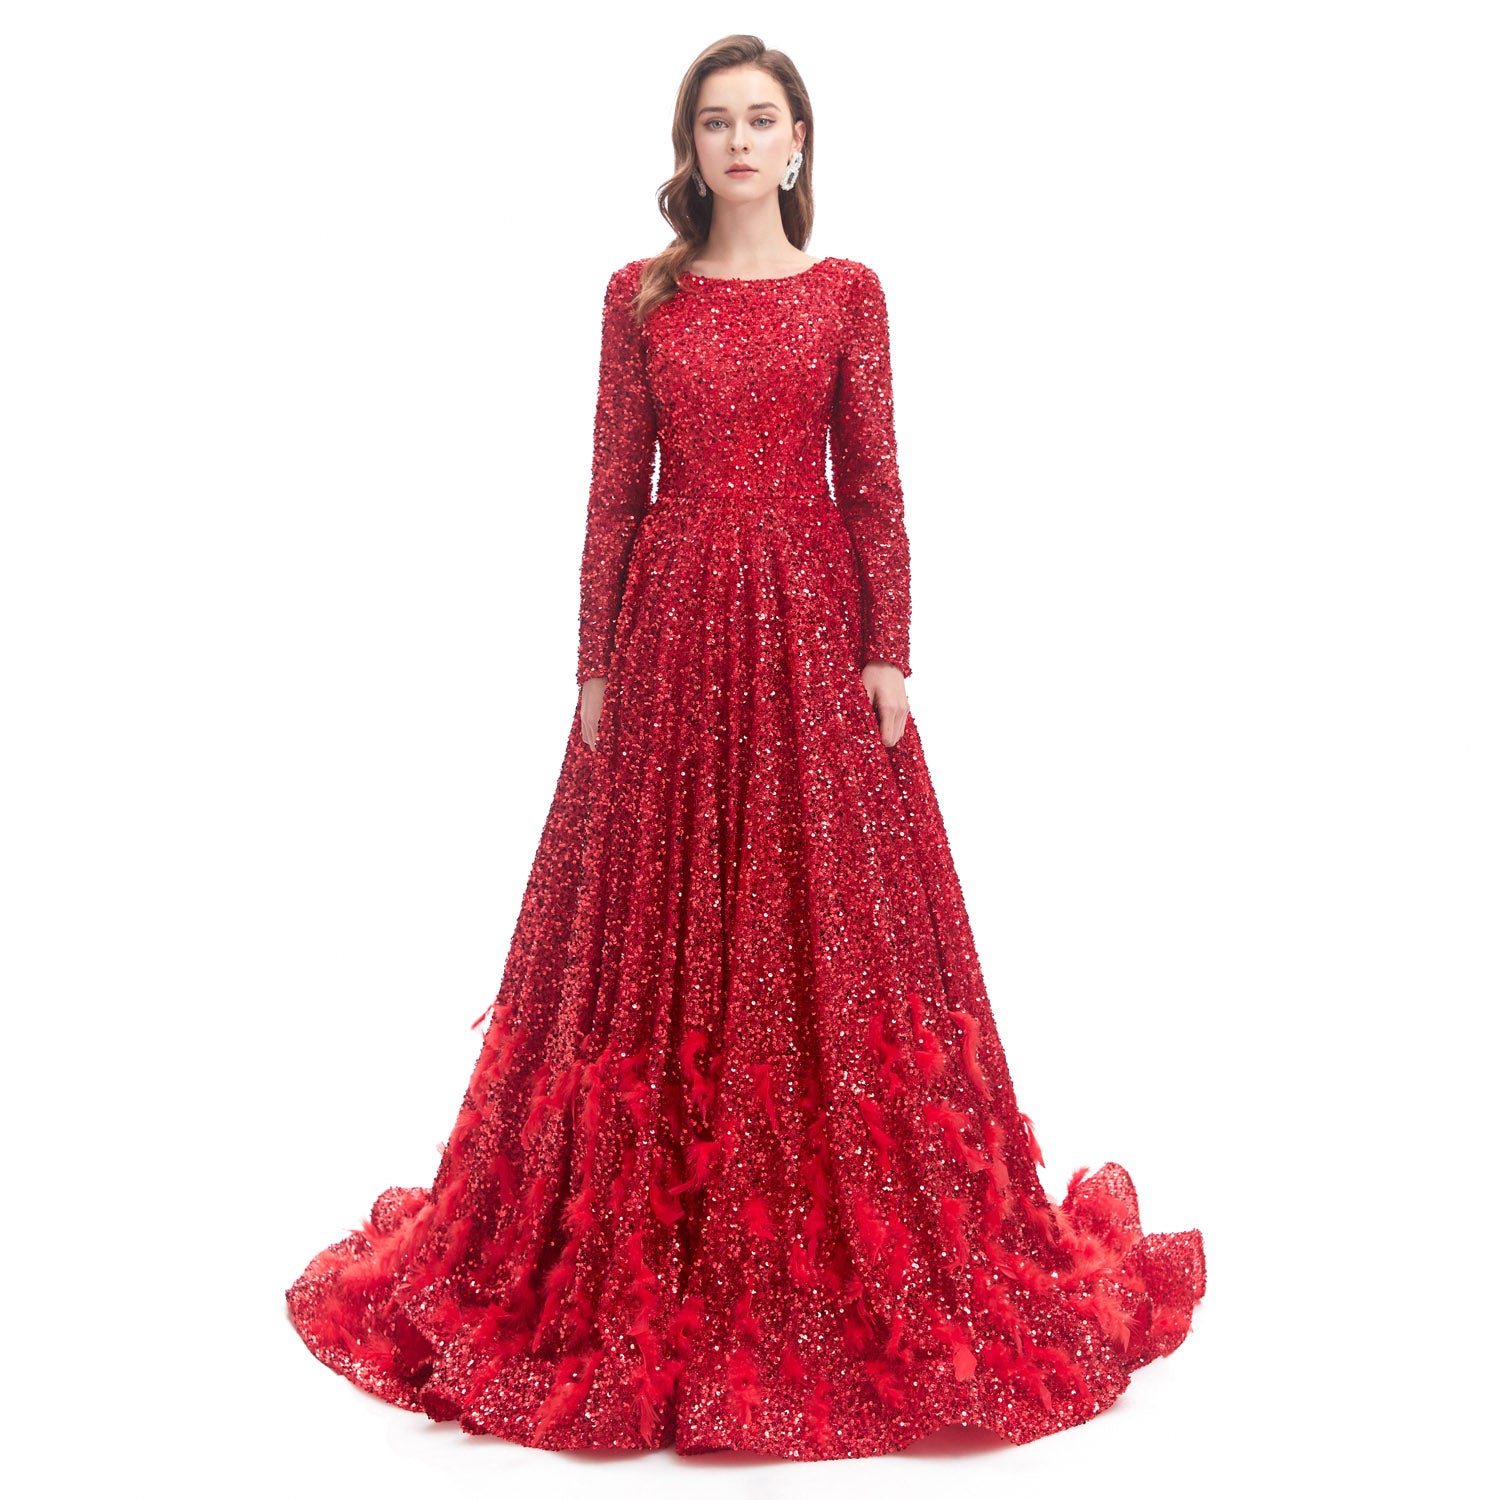 modest red dress